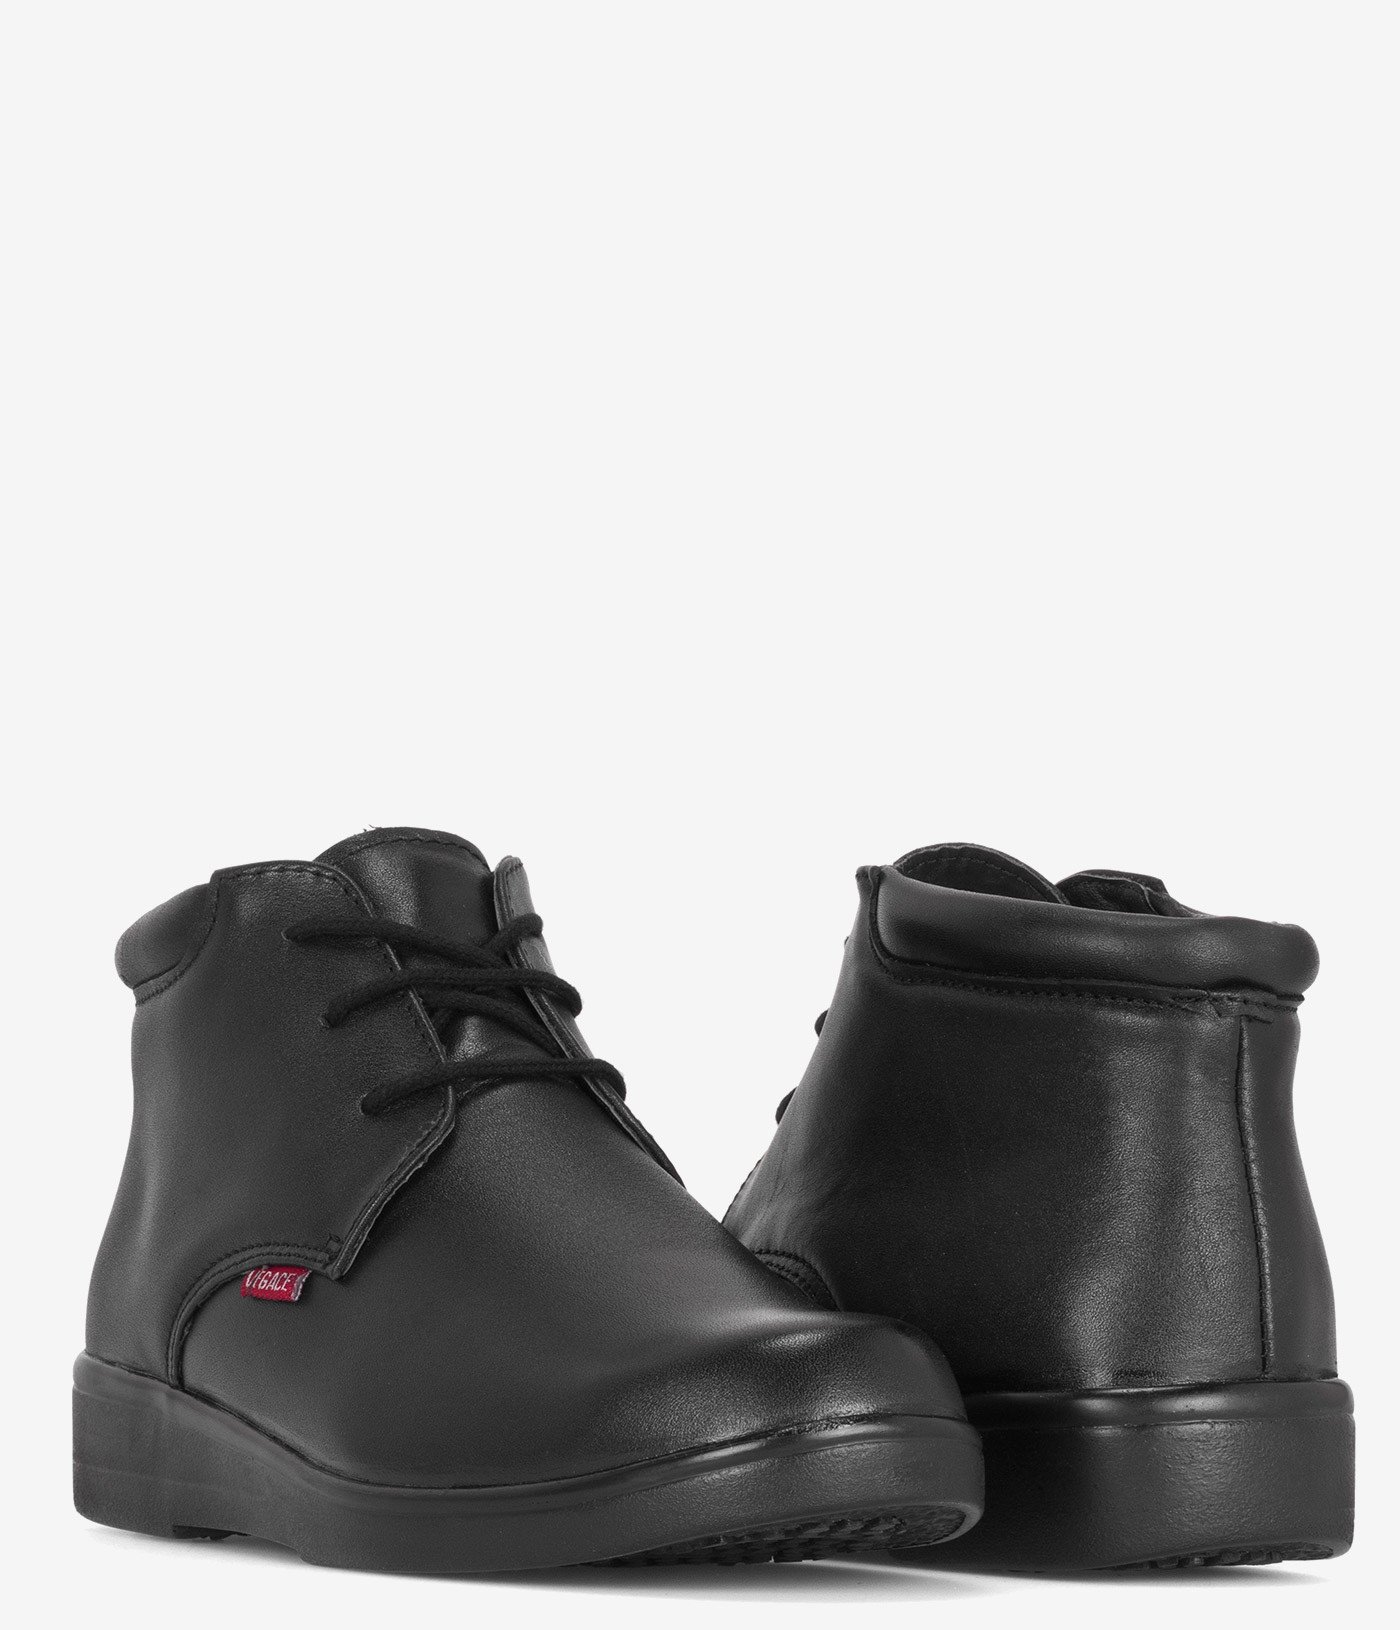 Vegace Chukka Slip Resistant Boot